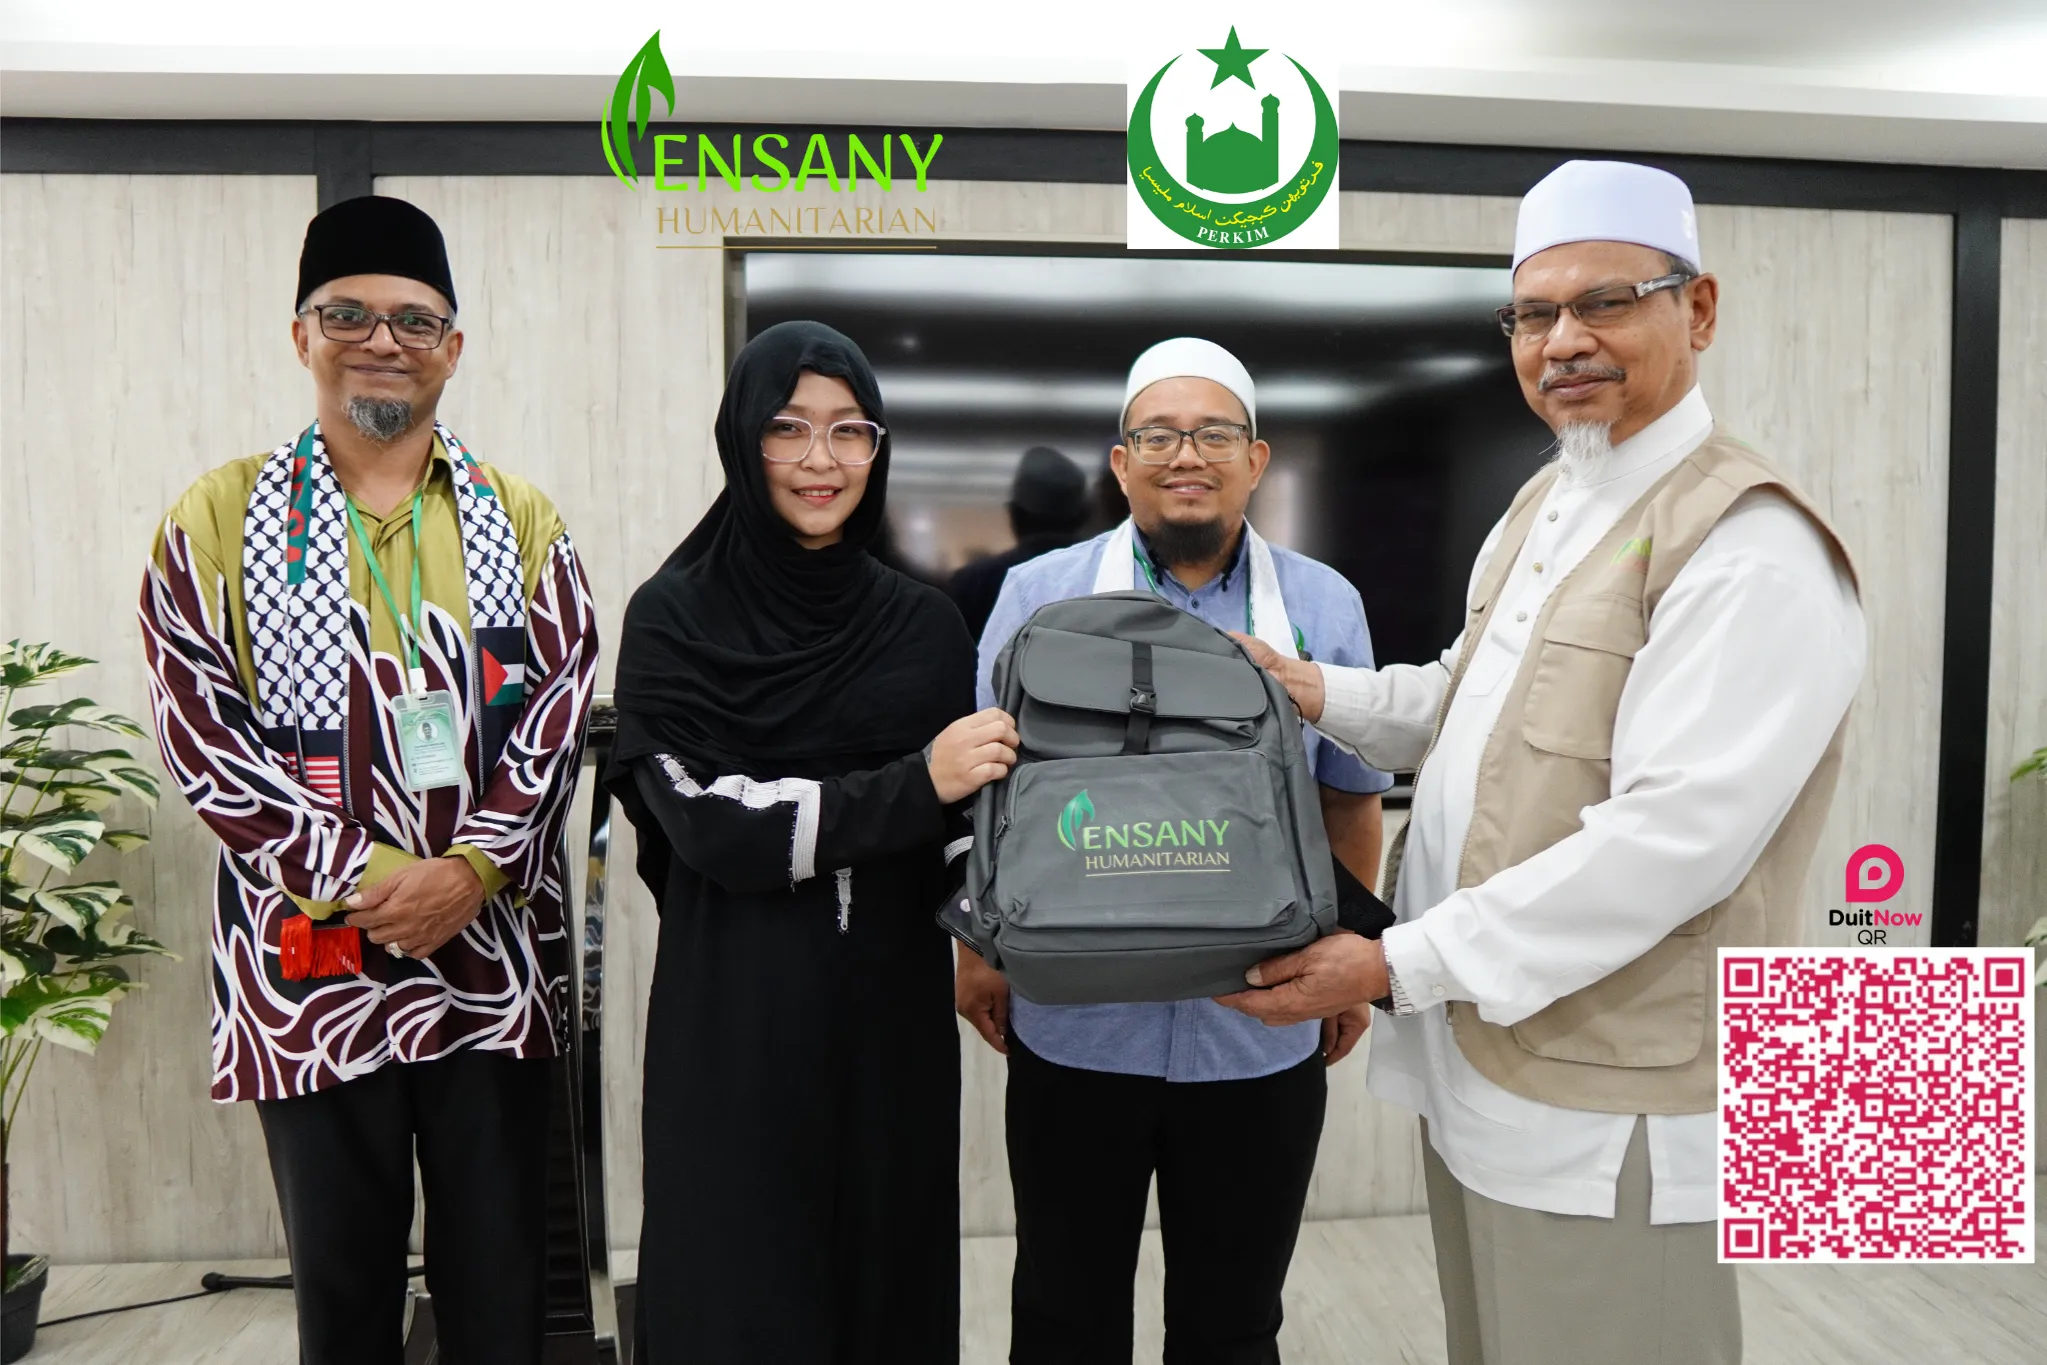 Hadiah Khas Selepas Mengucap Syahadah (Saudara Baru)  "Embrace the Light: Supporting New Muslim Converts"